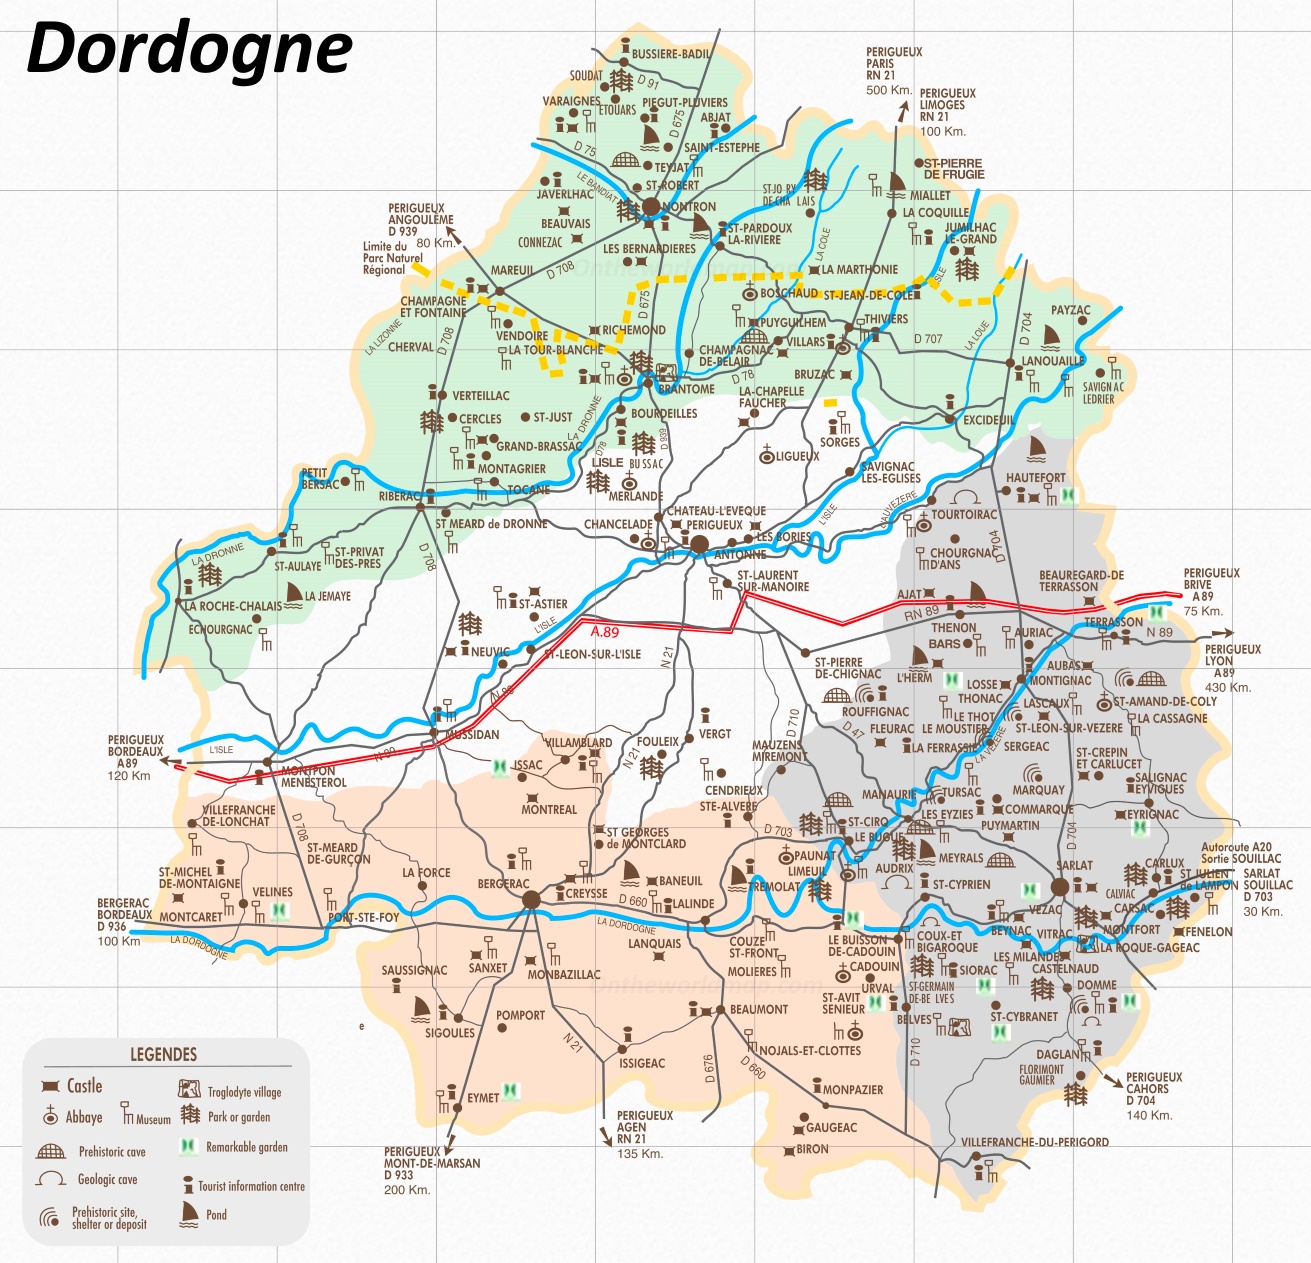 hautefort dordogne map